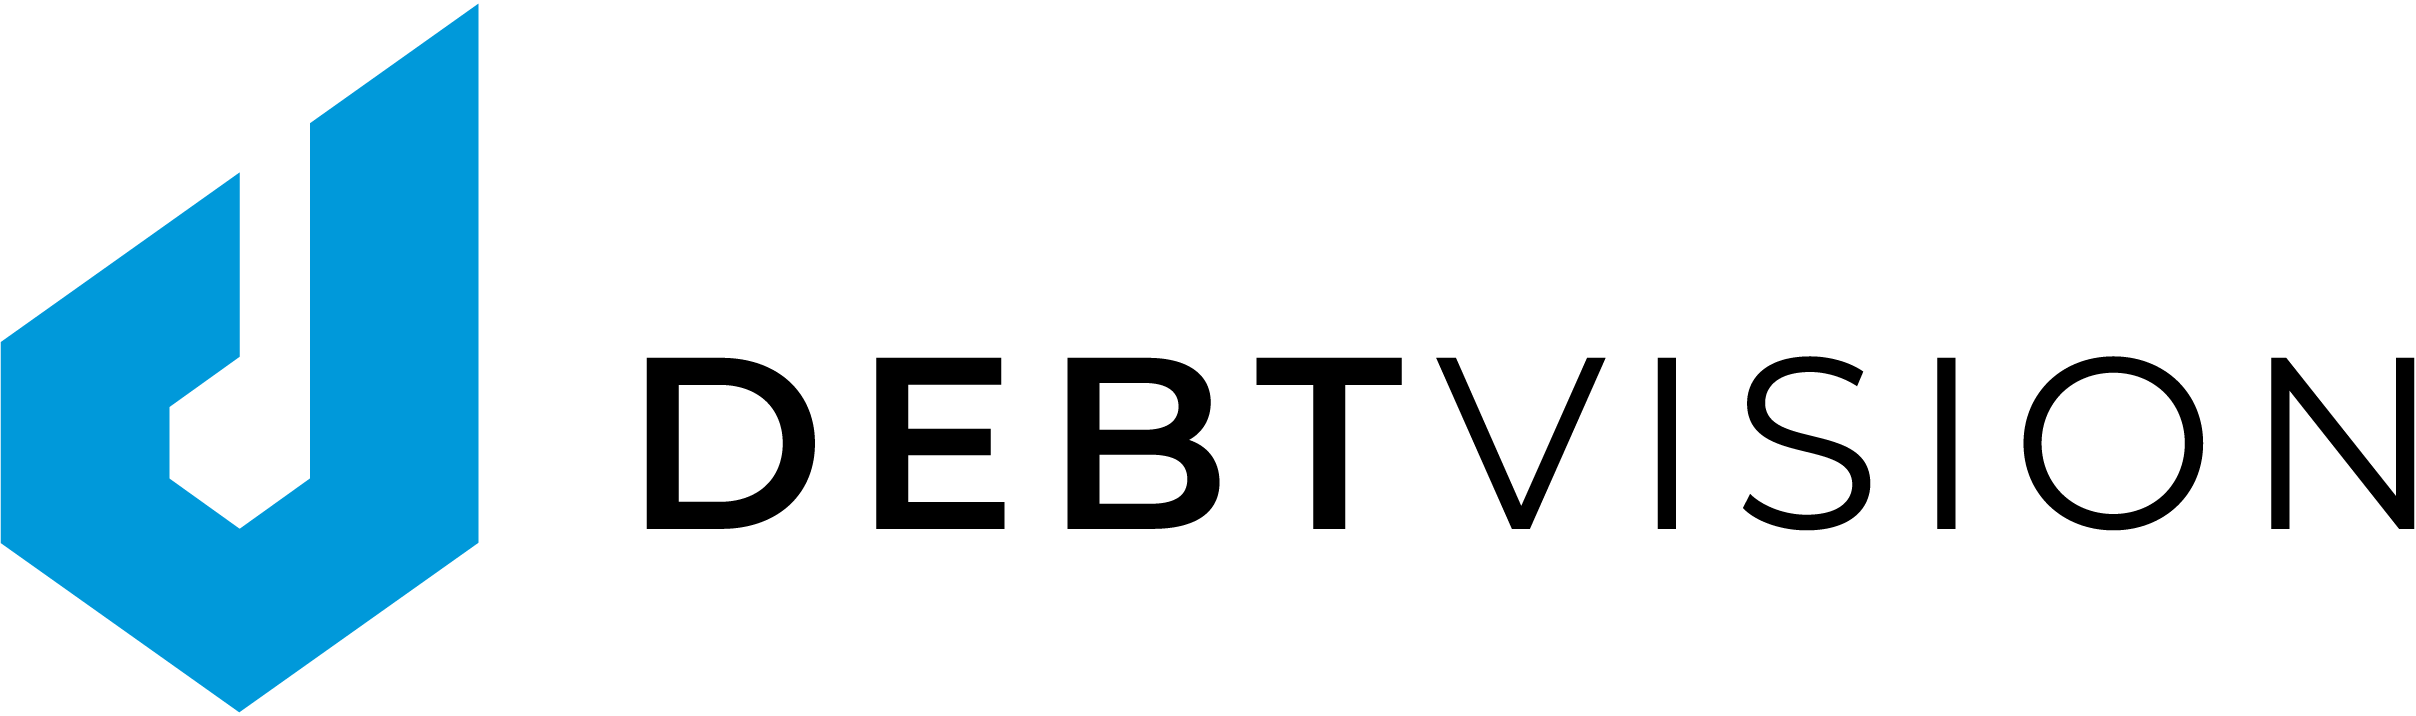 Logo Publsiher Württembergische Lebensversicherung zeichnet als erster Investor Schuldschein der öffentlichen Hand digital